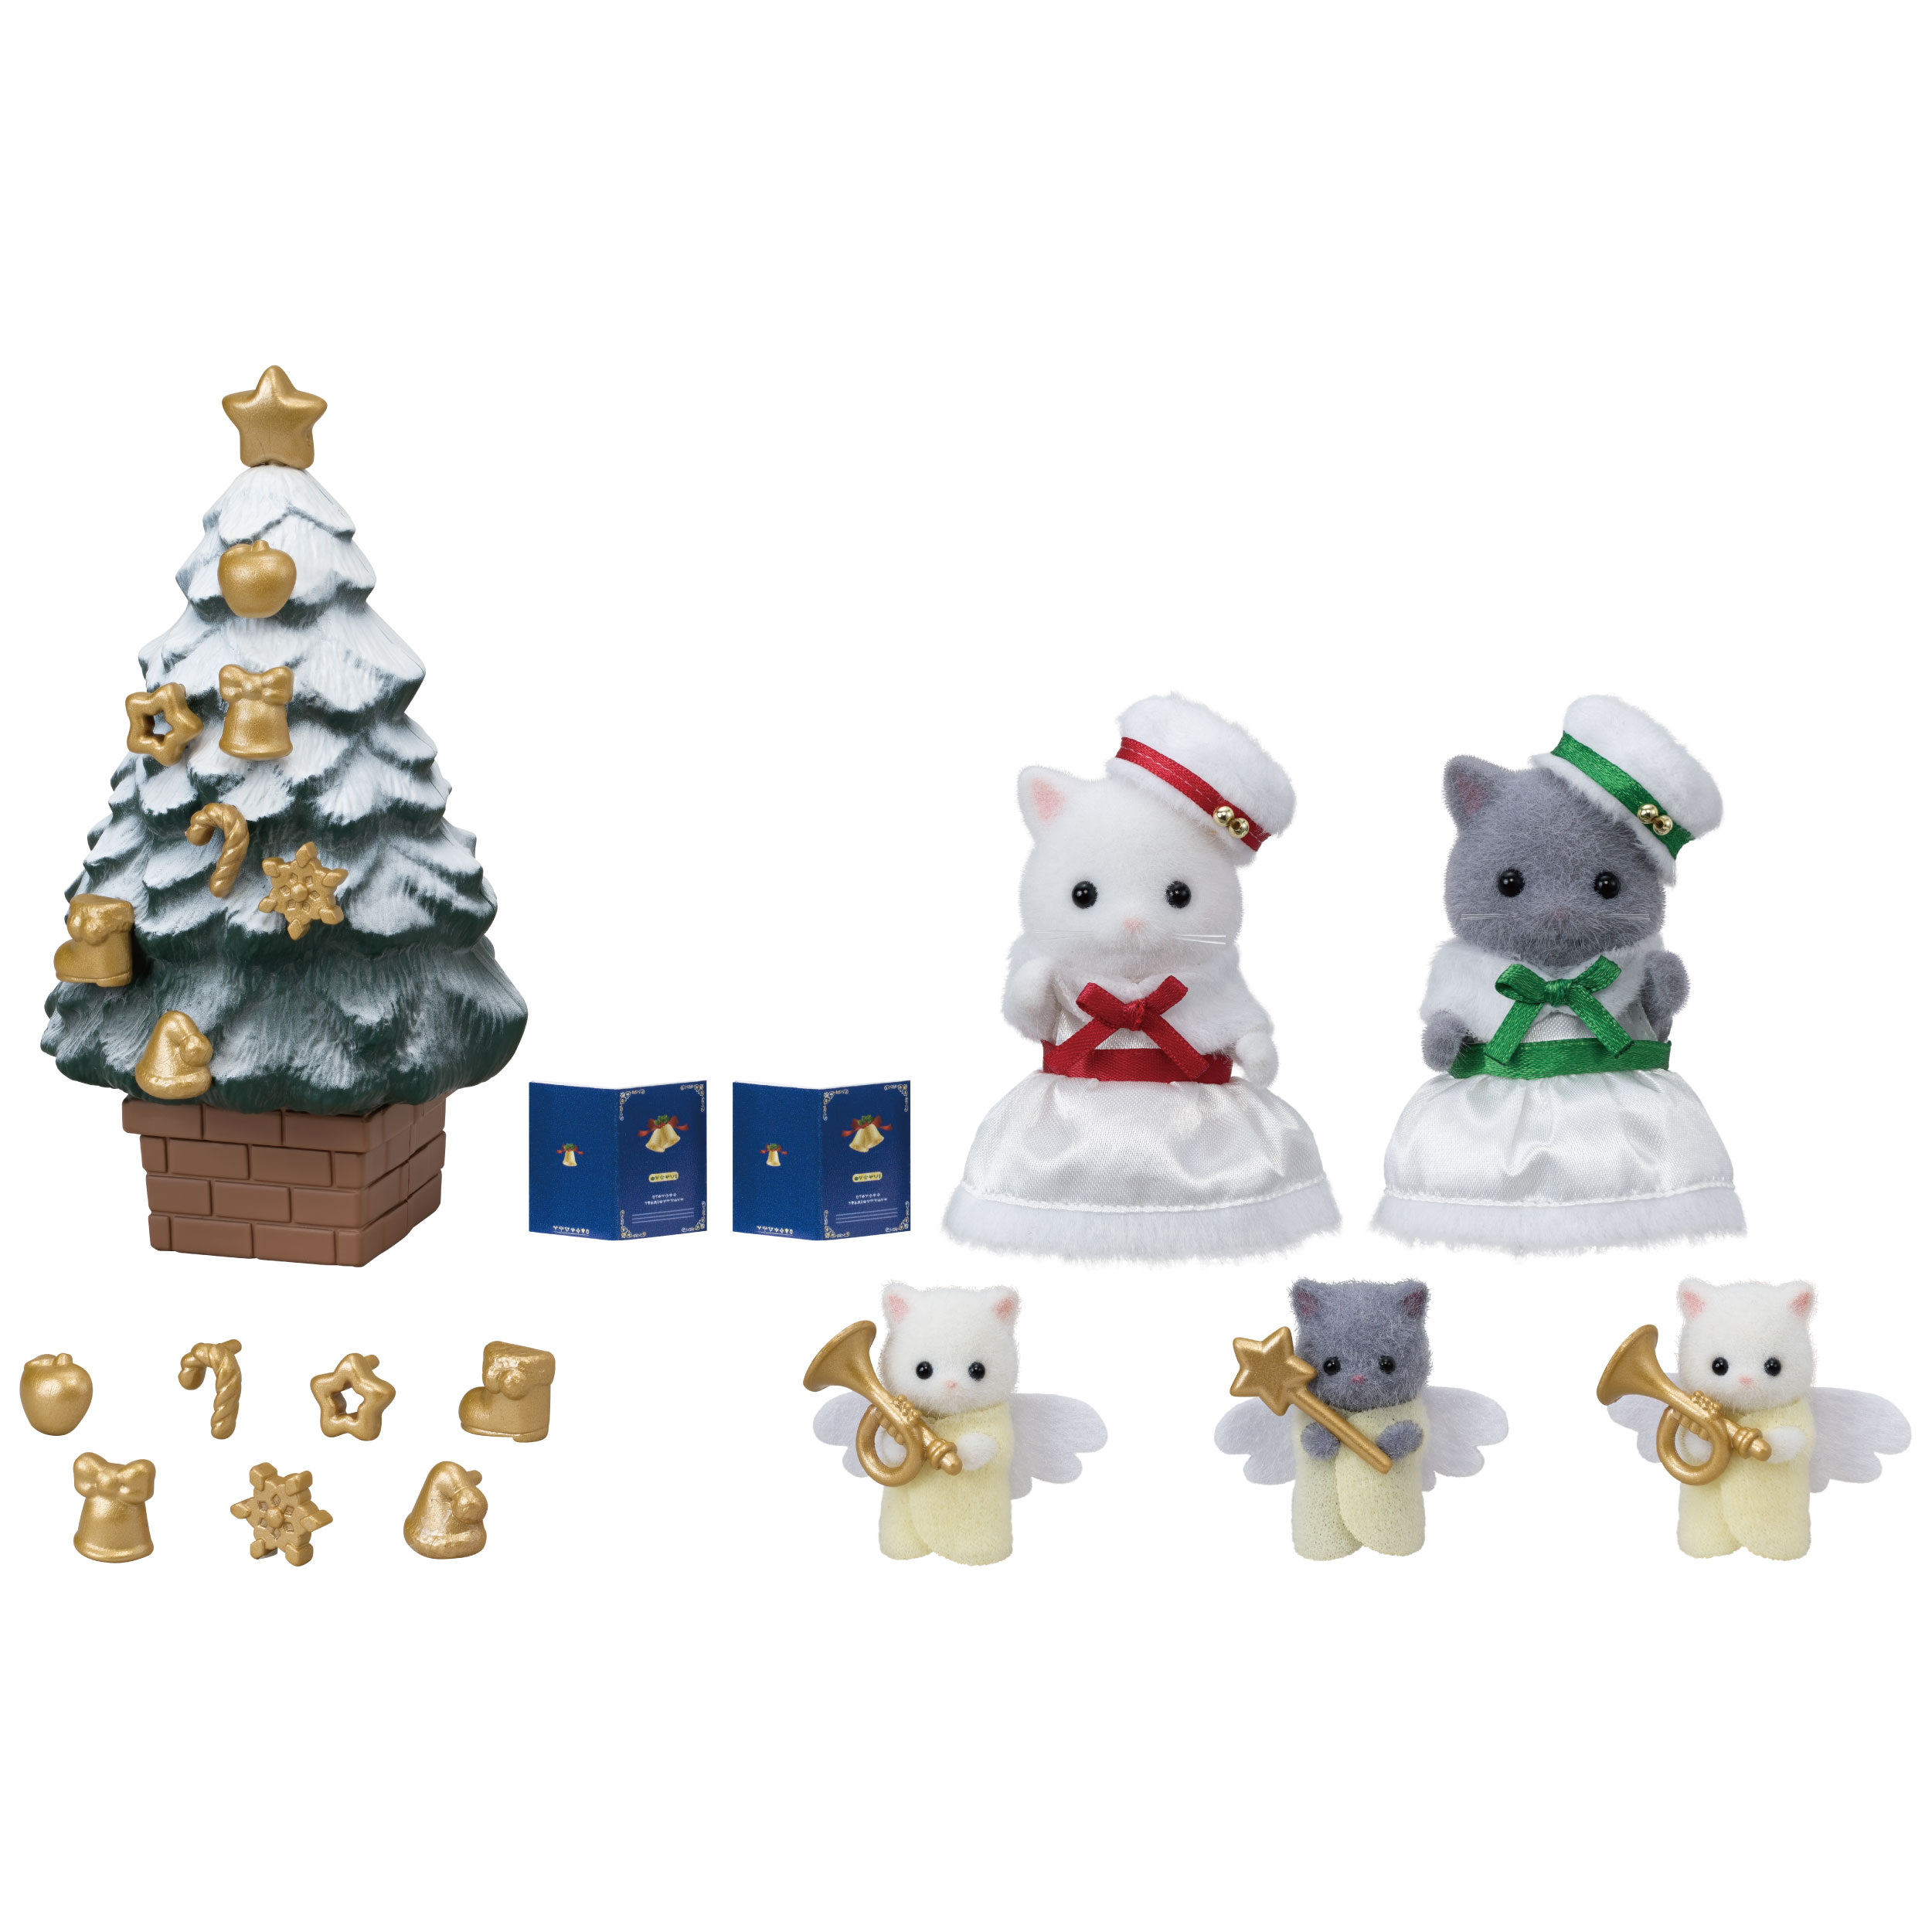 ホワイトクリスマスセット / 家具と人形セット - シルバニアファミリー 